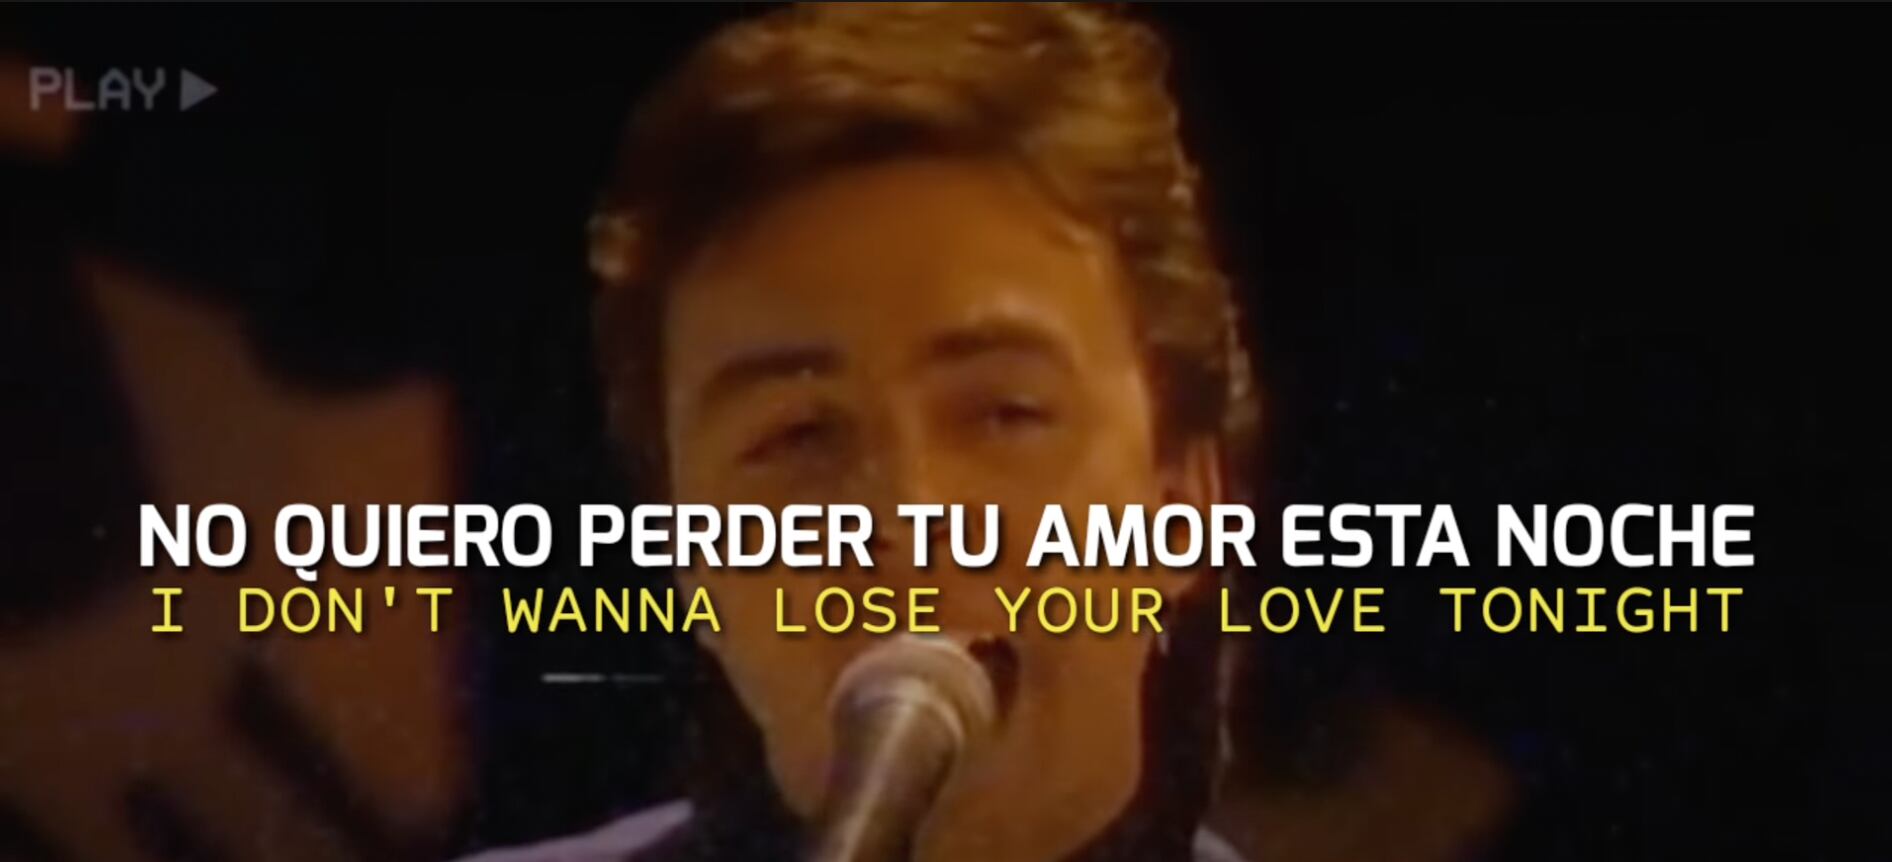 The Outfield - Your Love, subtitulado al inglés y al español. (foto: YouTube)